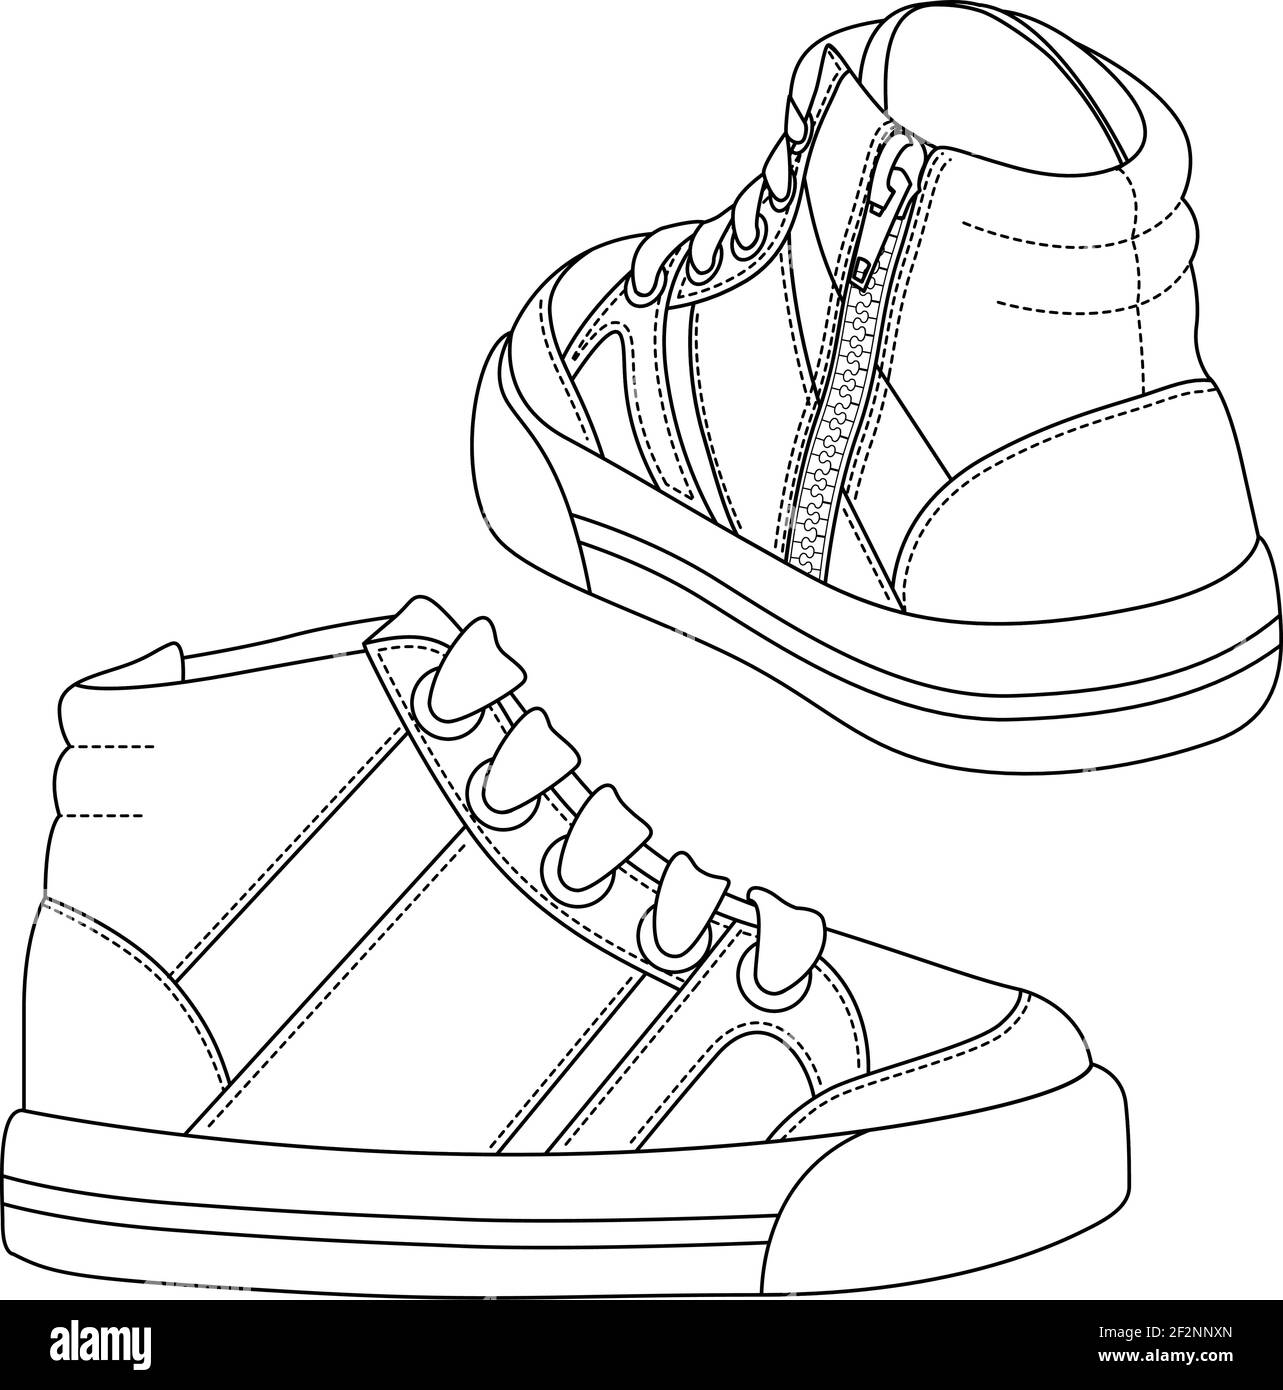 Sneakers shoes vector drawing illustration Banque d'images détourées - Alamy